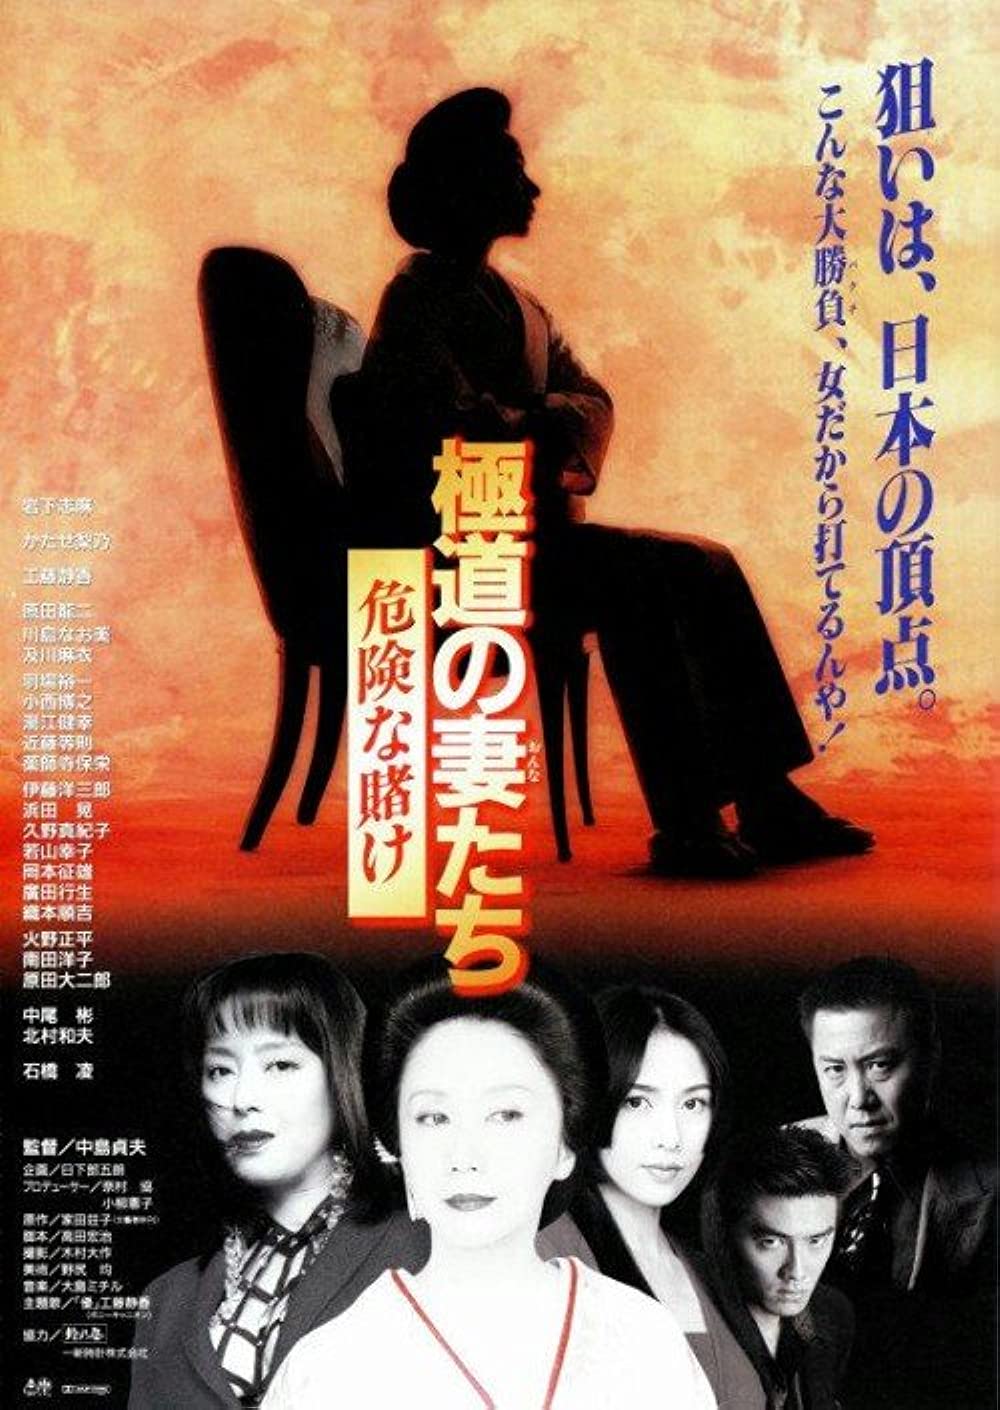 Gokudô no onna-tachi (1986)